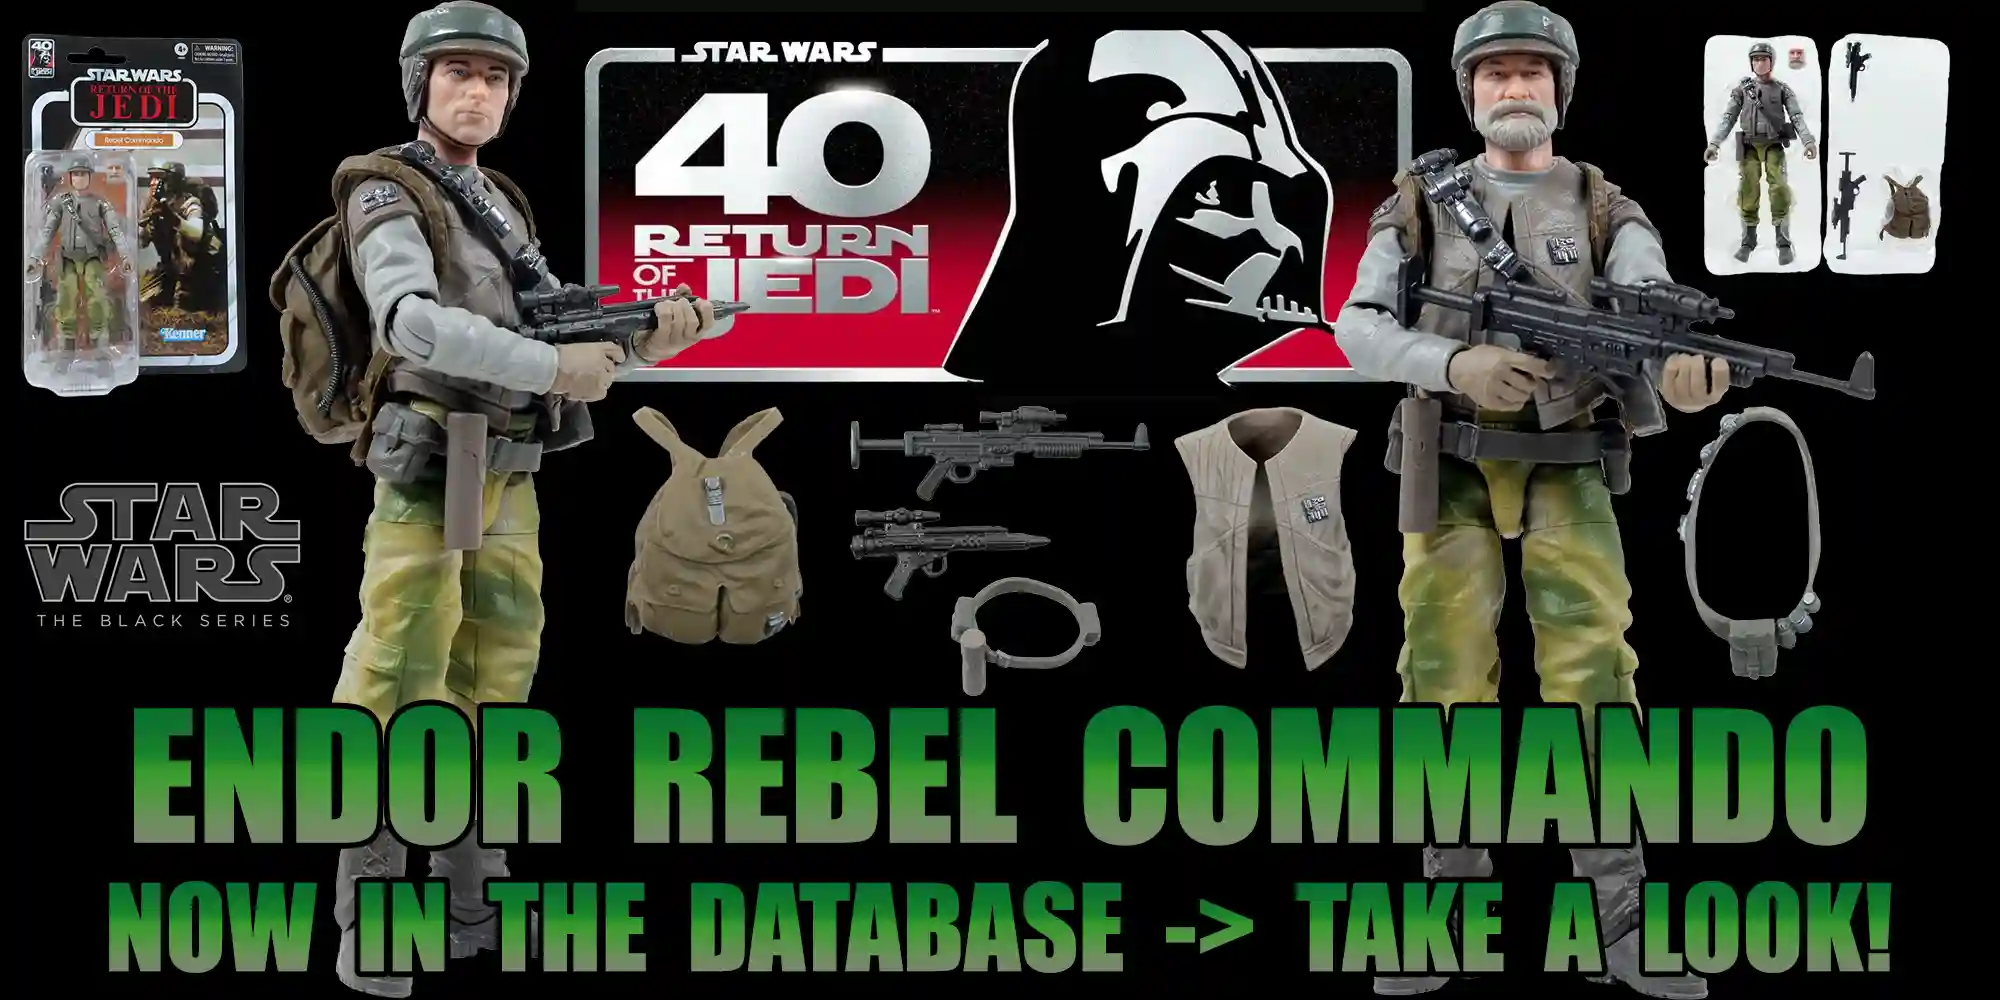 Black Series Endor Rebel Commando